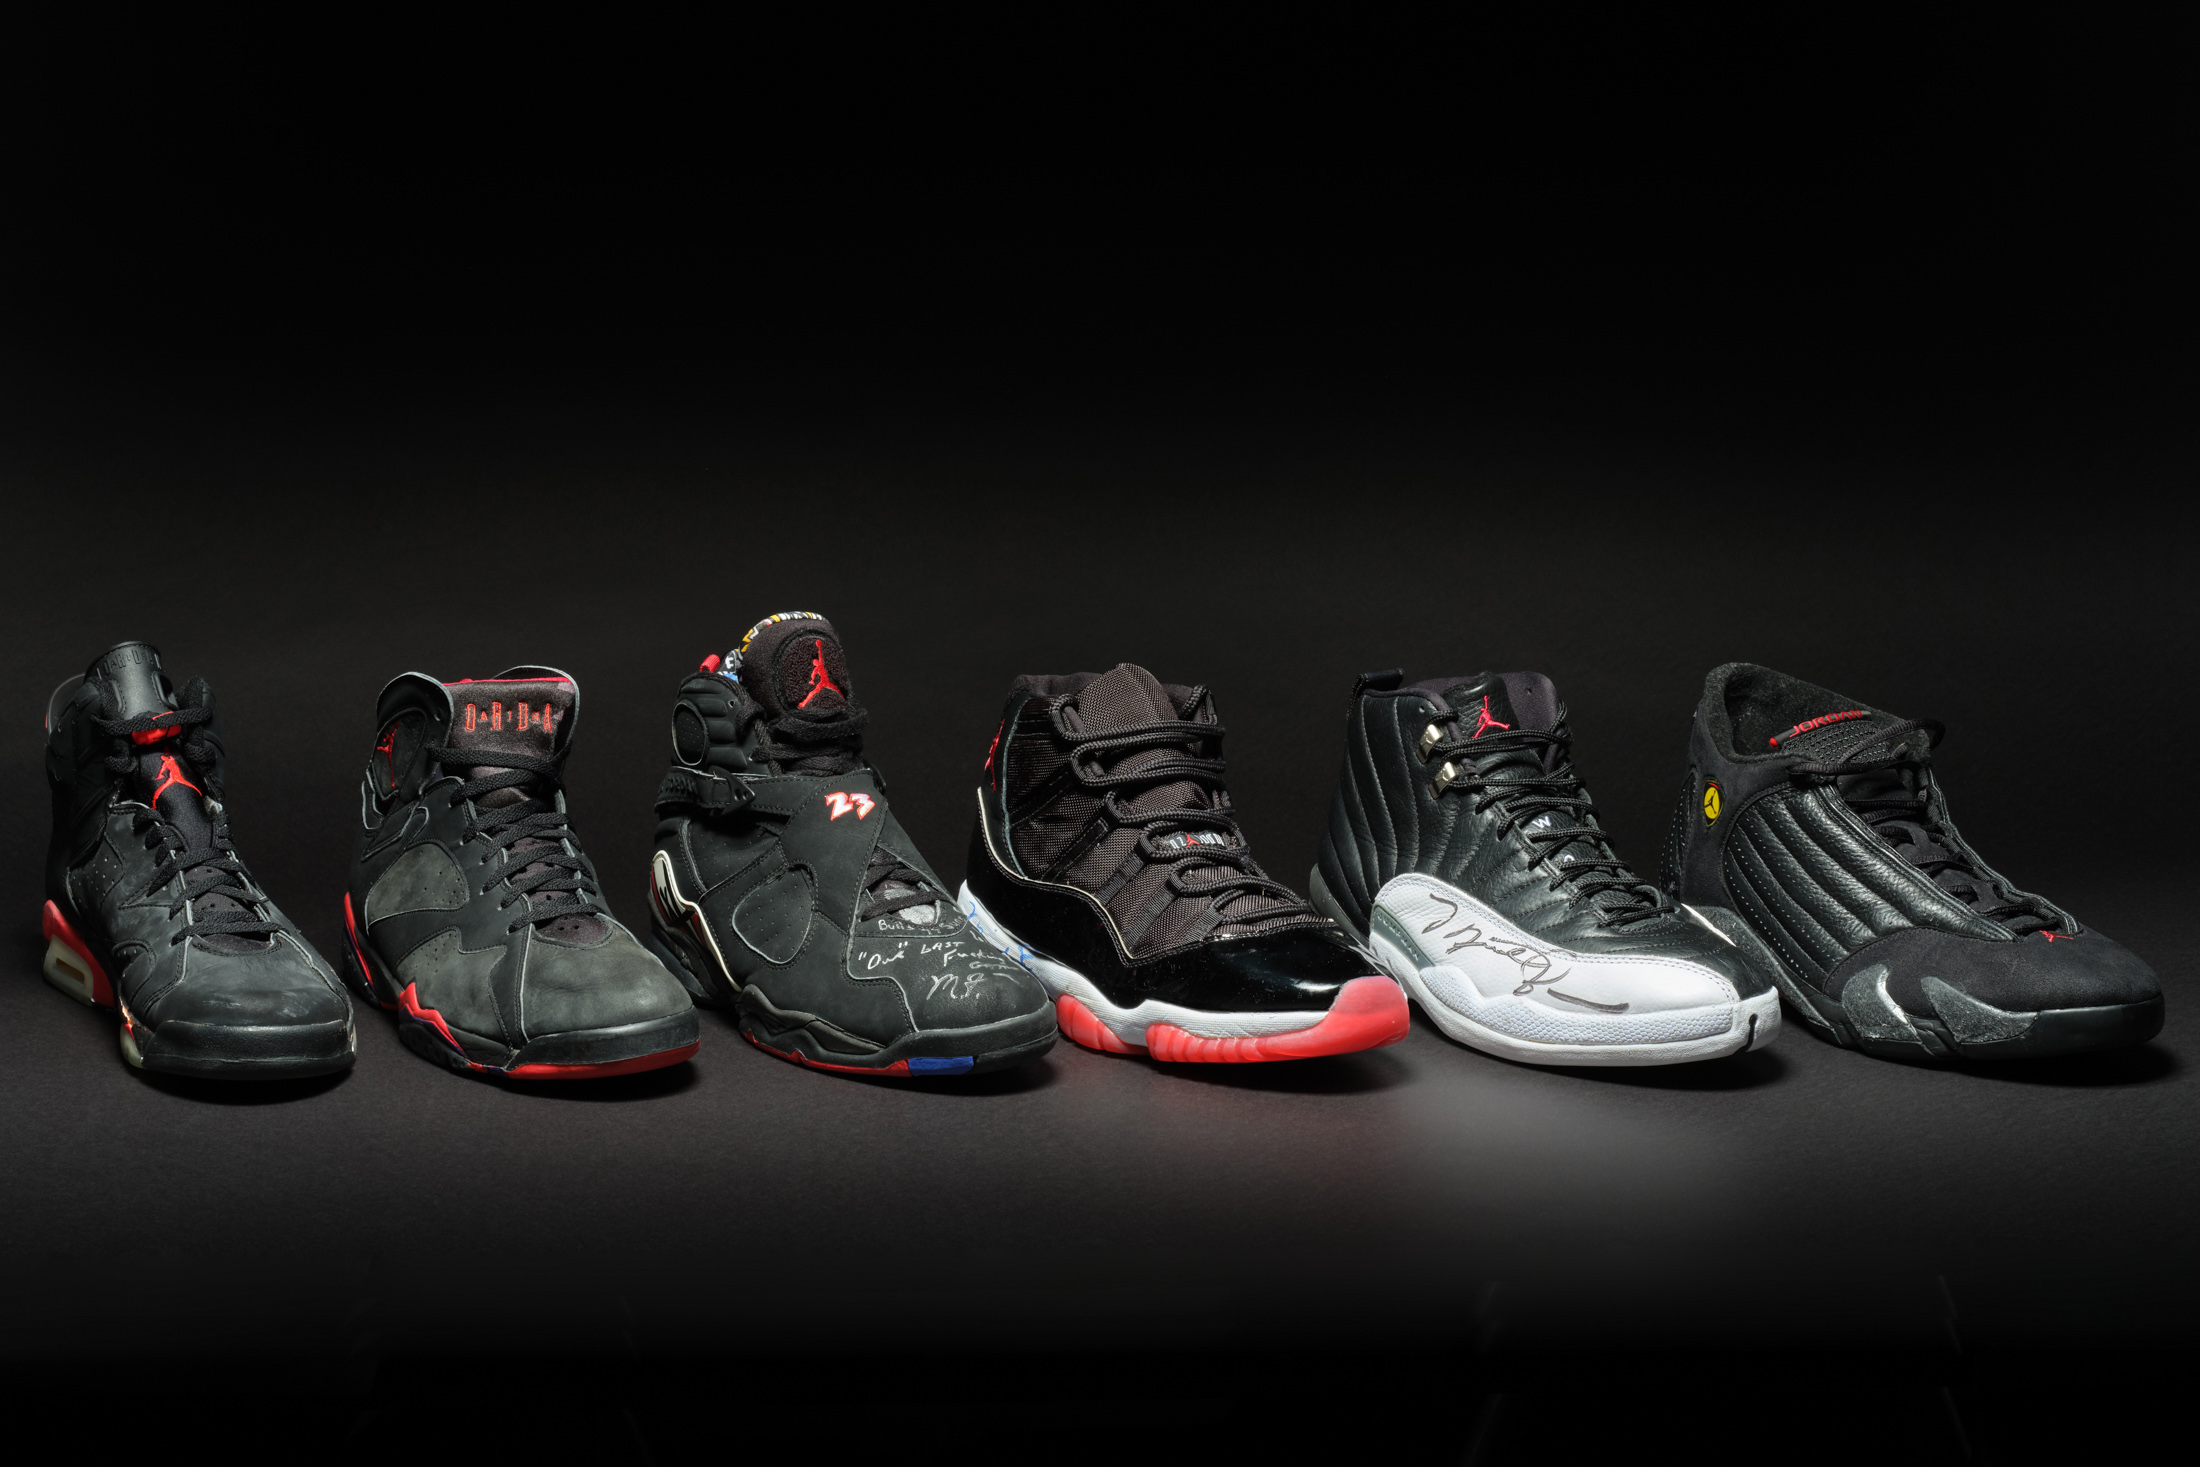 Air Jordan See Rare Michael Jordan Collection of NBA Finals Game Sneakers Bloomberg